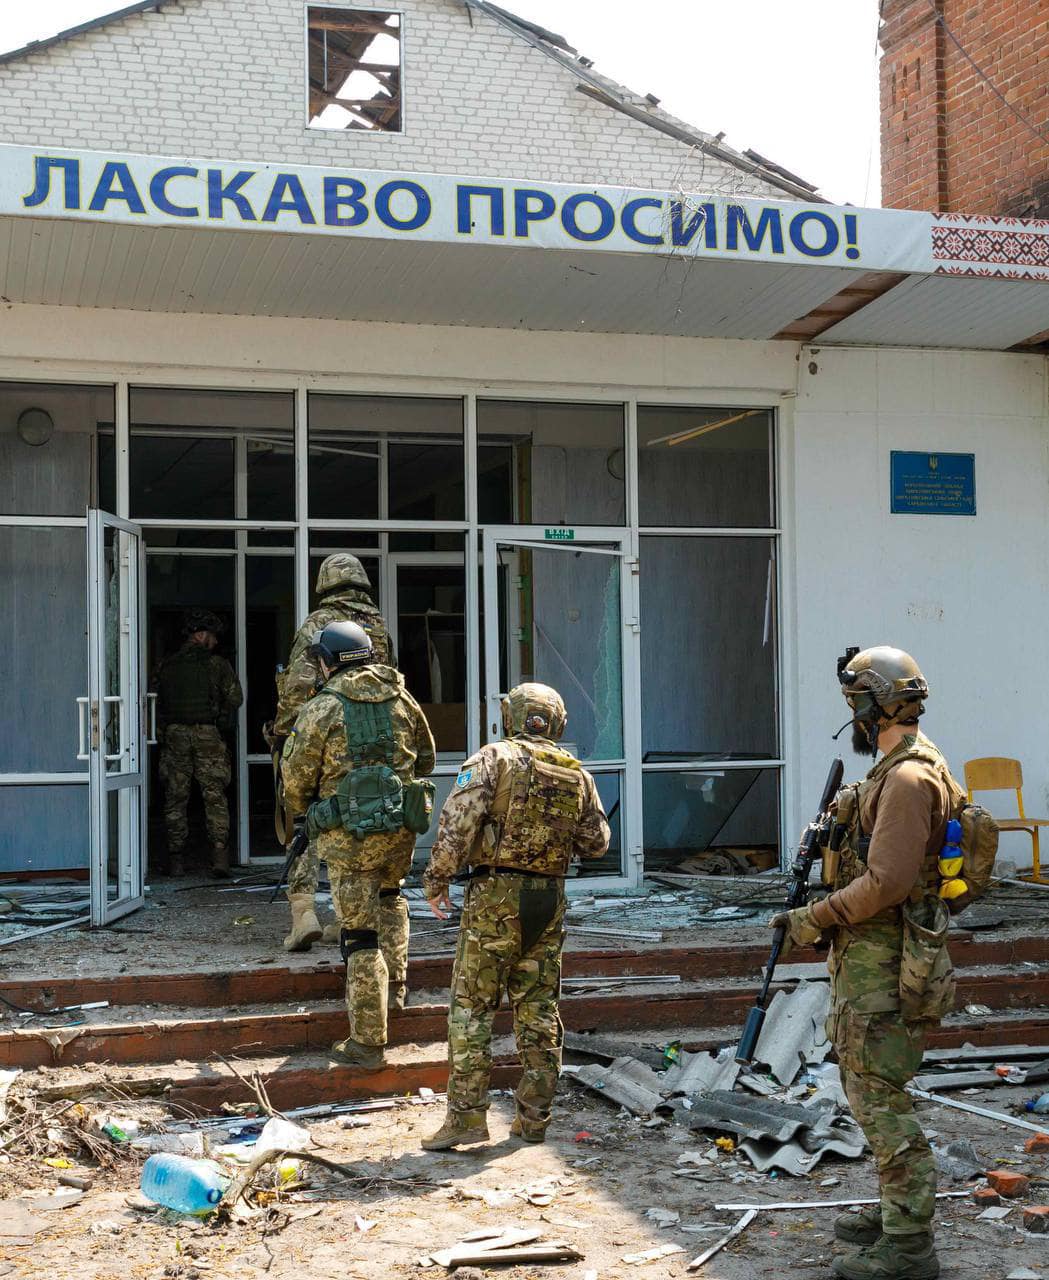 Обстрелянные дома и заминированная территория: показали, как выглядит освободившееся село в Харьковской области - фото 4